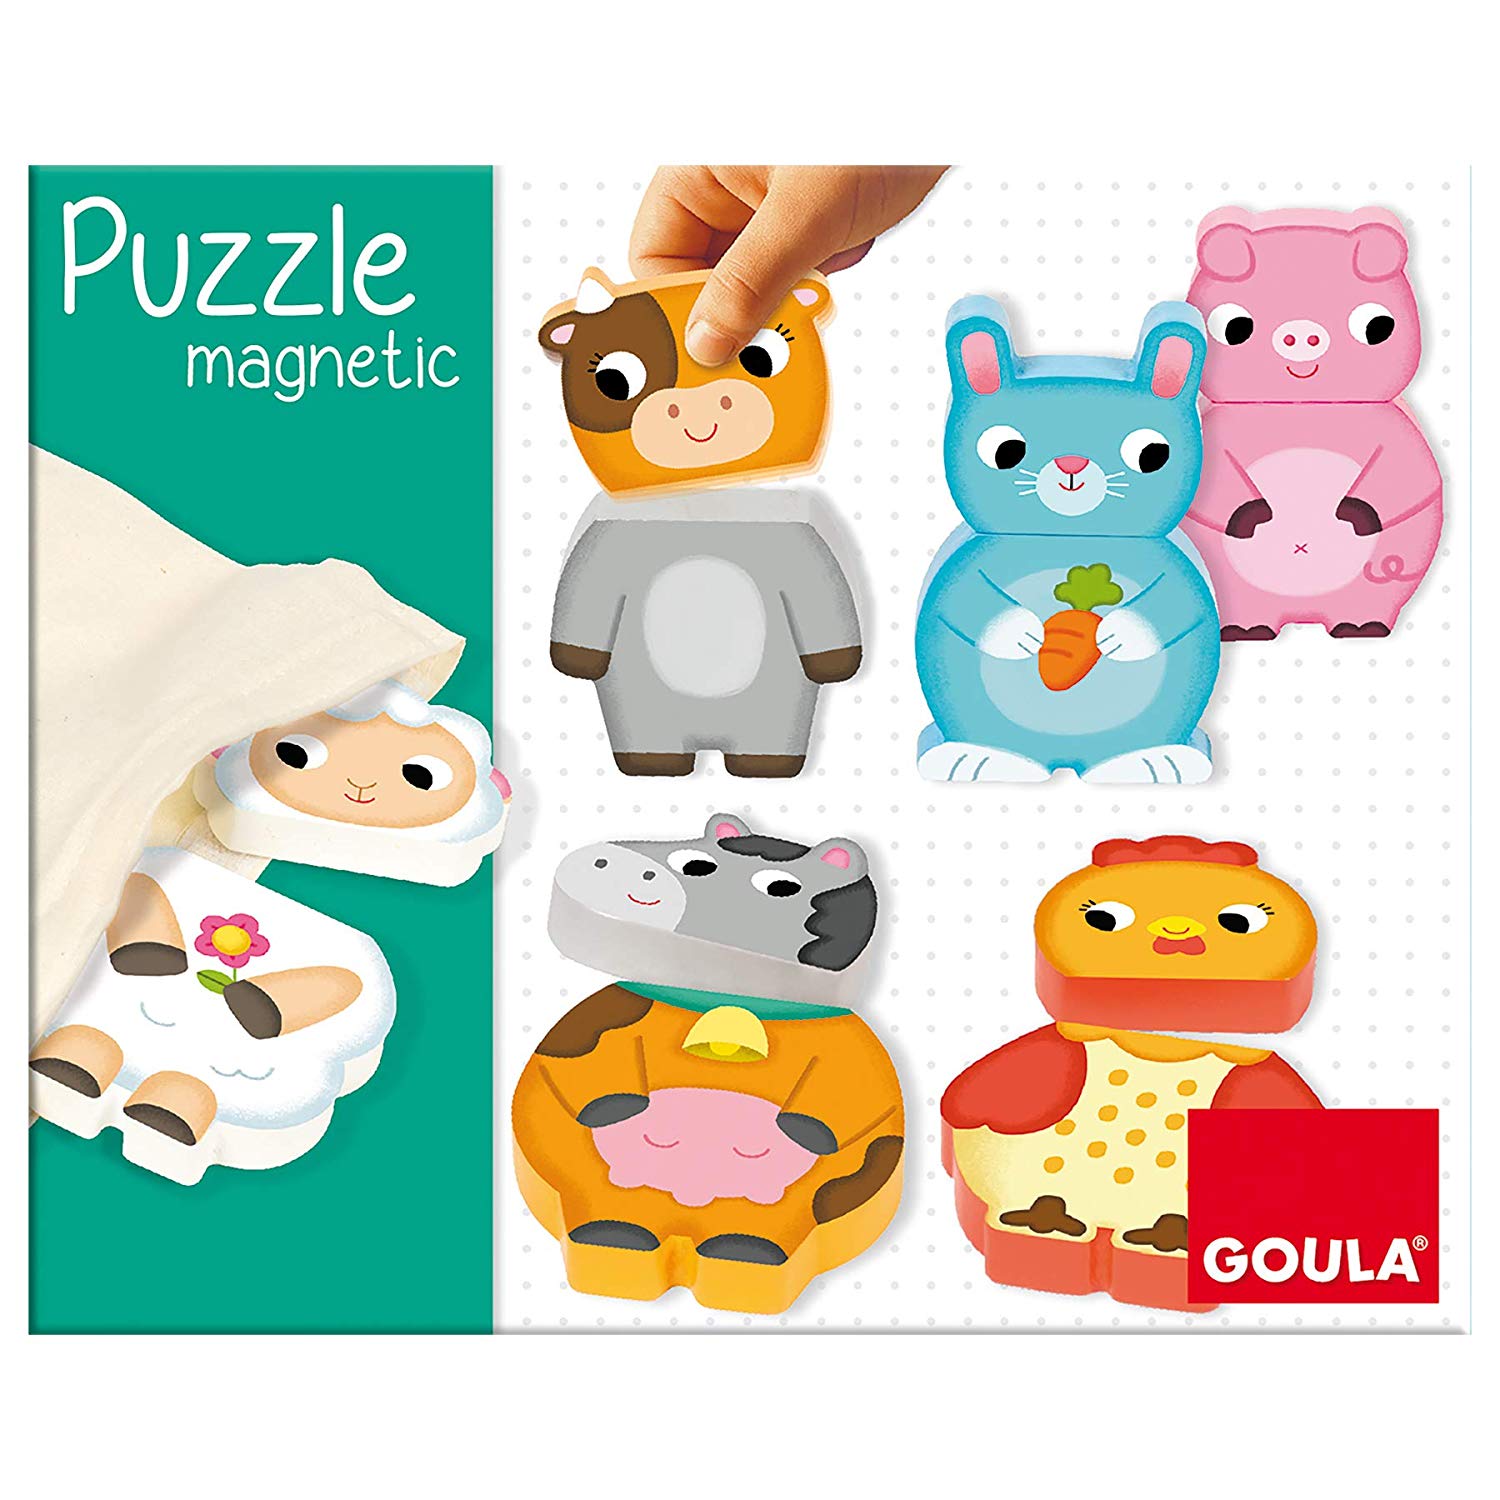 Puzzle magnétique enfant Goula - six puzzles magnétiques animaux